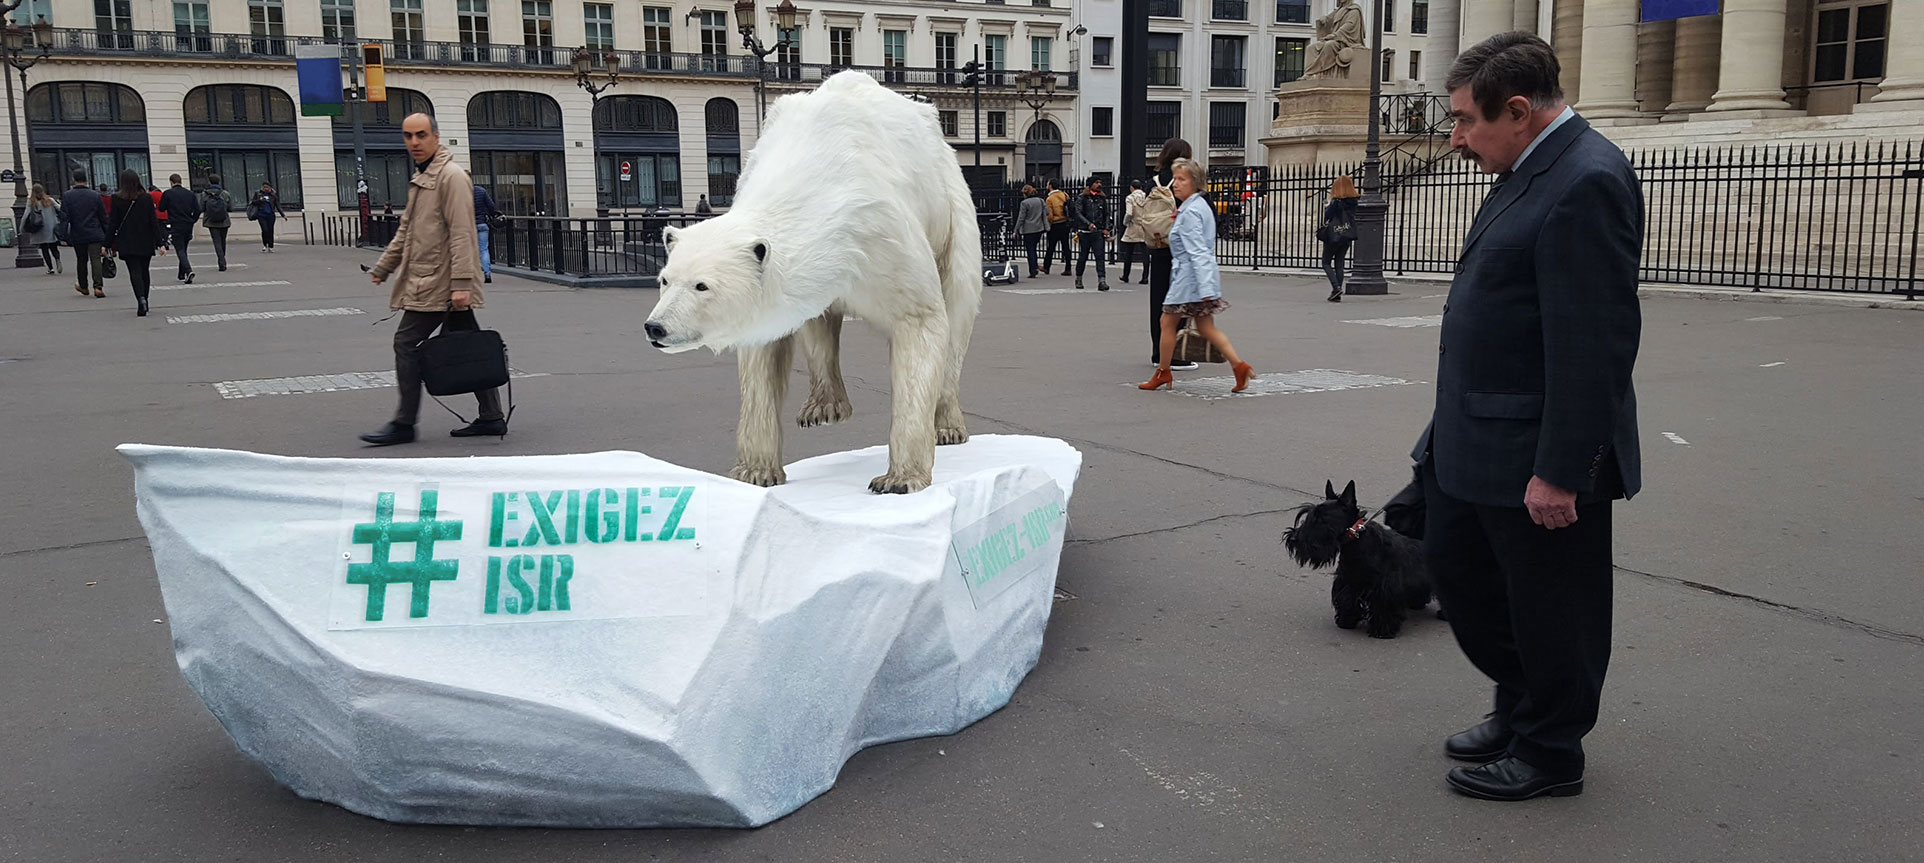 A bear in Paris